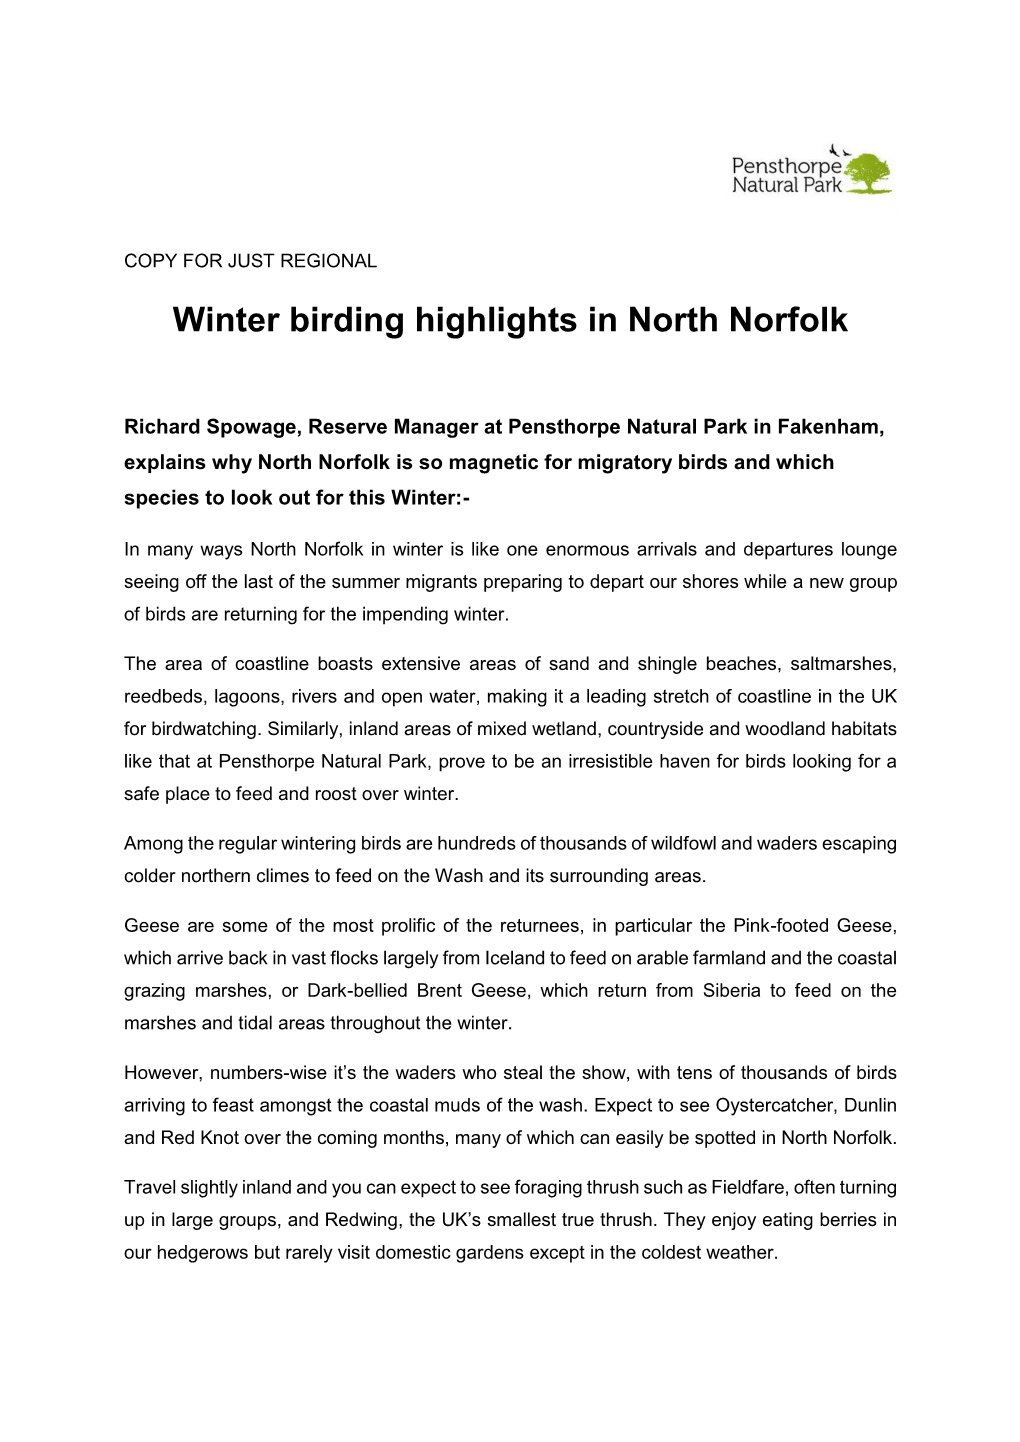 Winter Birding Highlights in North Norfolk